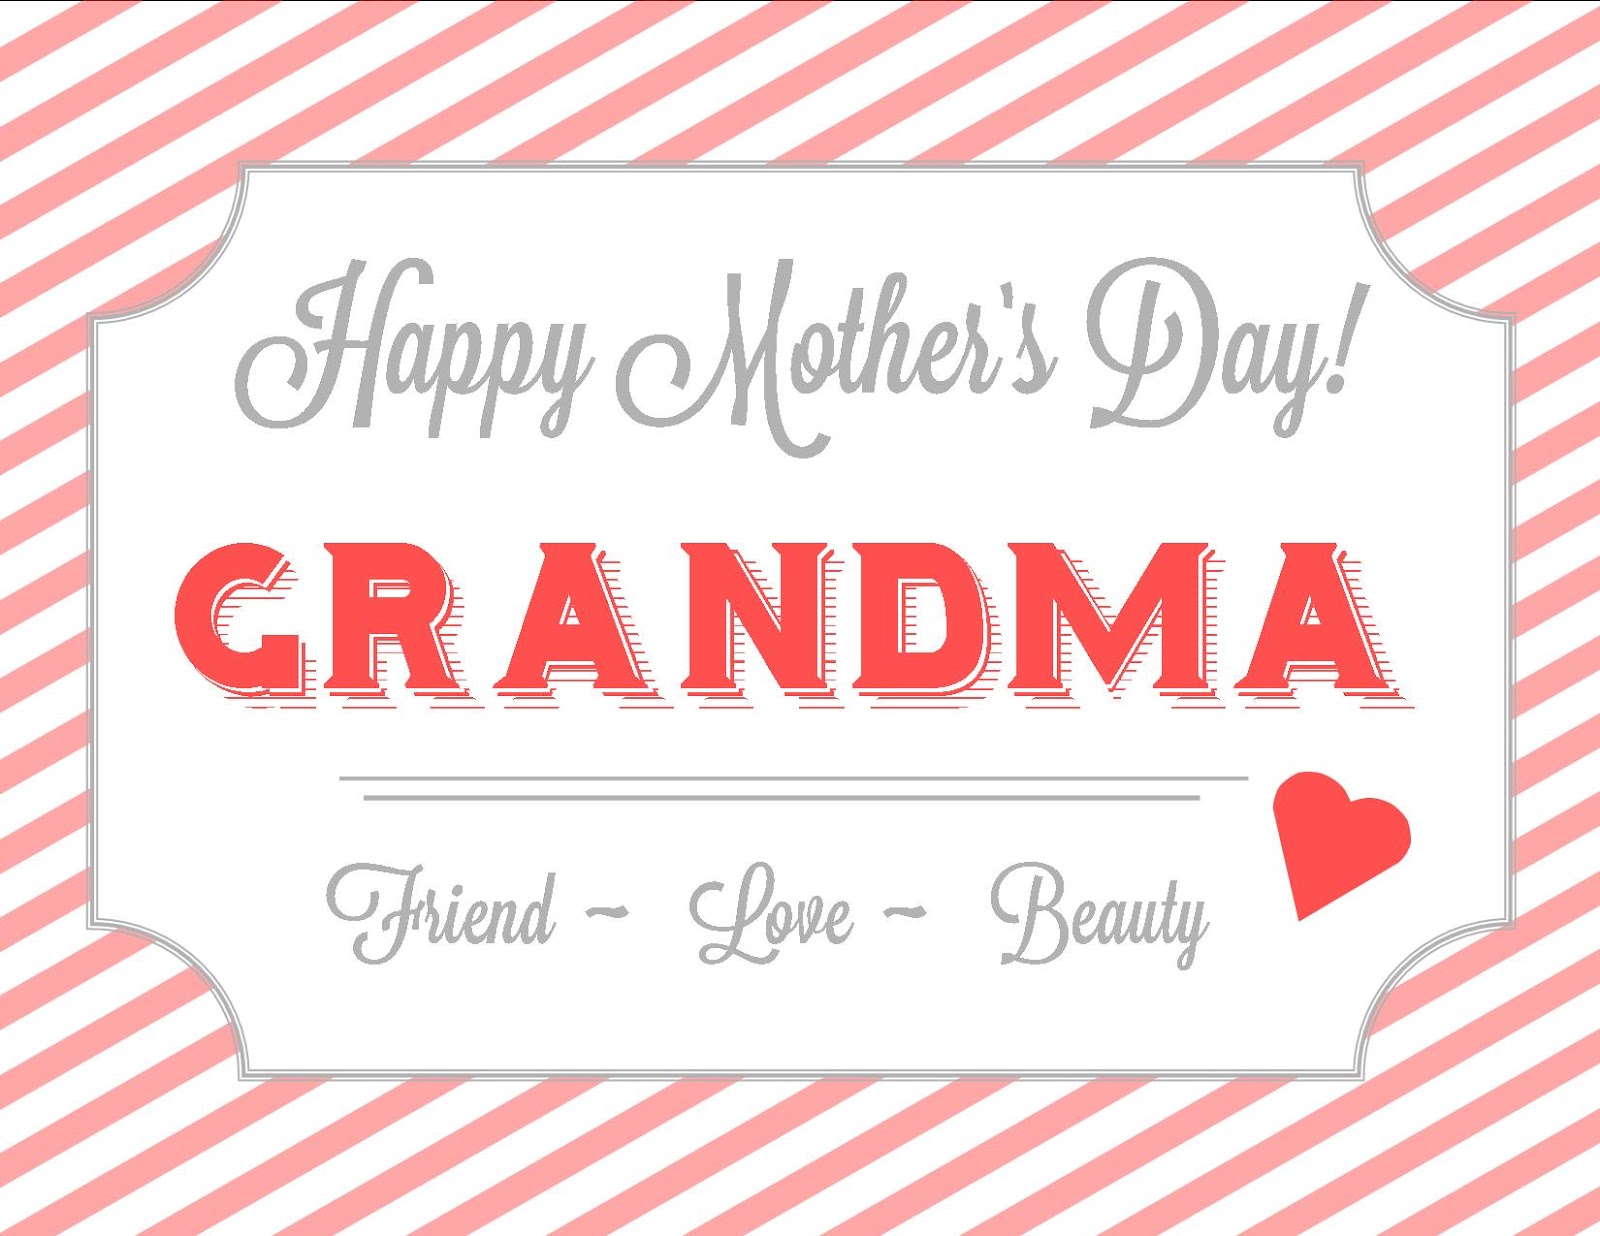 grandma-printable-cards-printable-word-searches